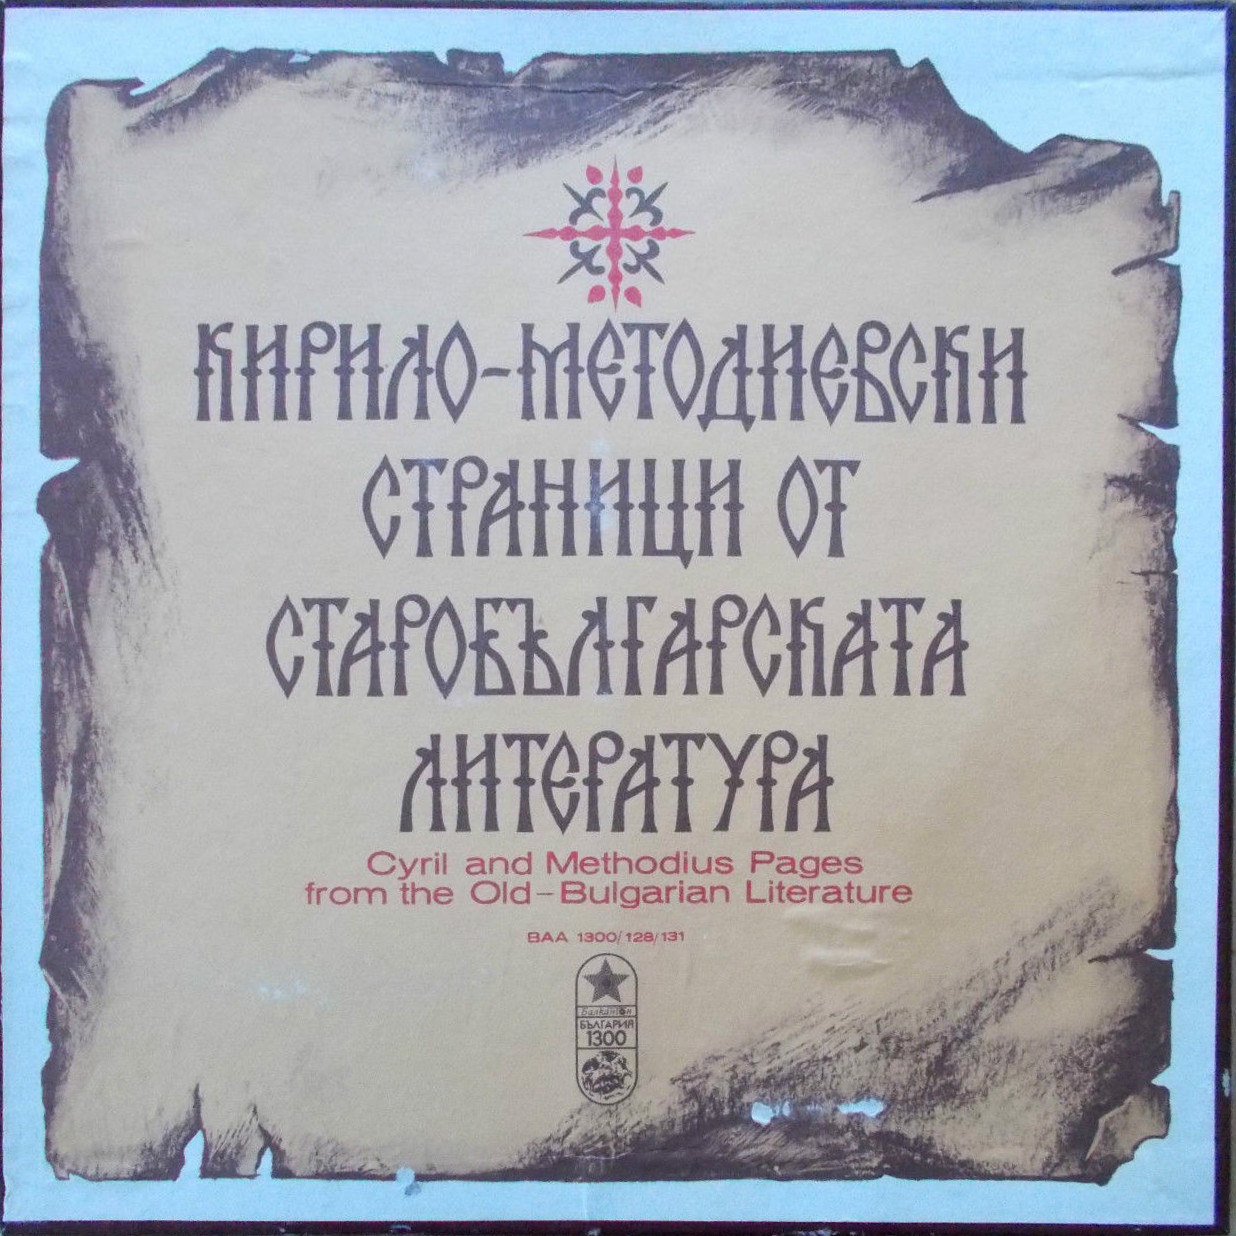 Кирило-Методиевски страници от старобългарска литература